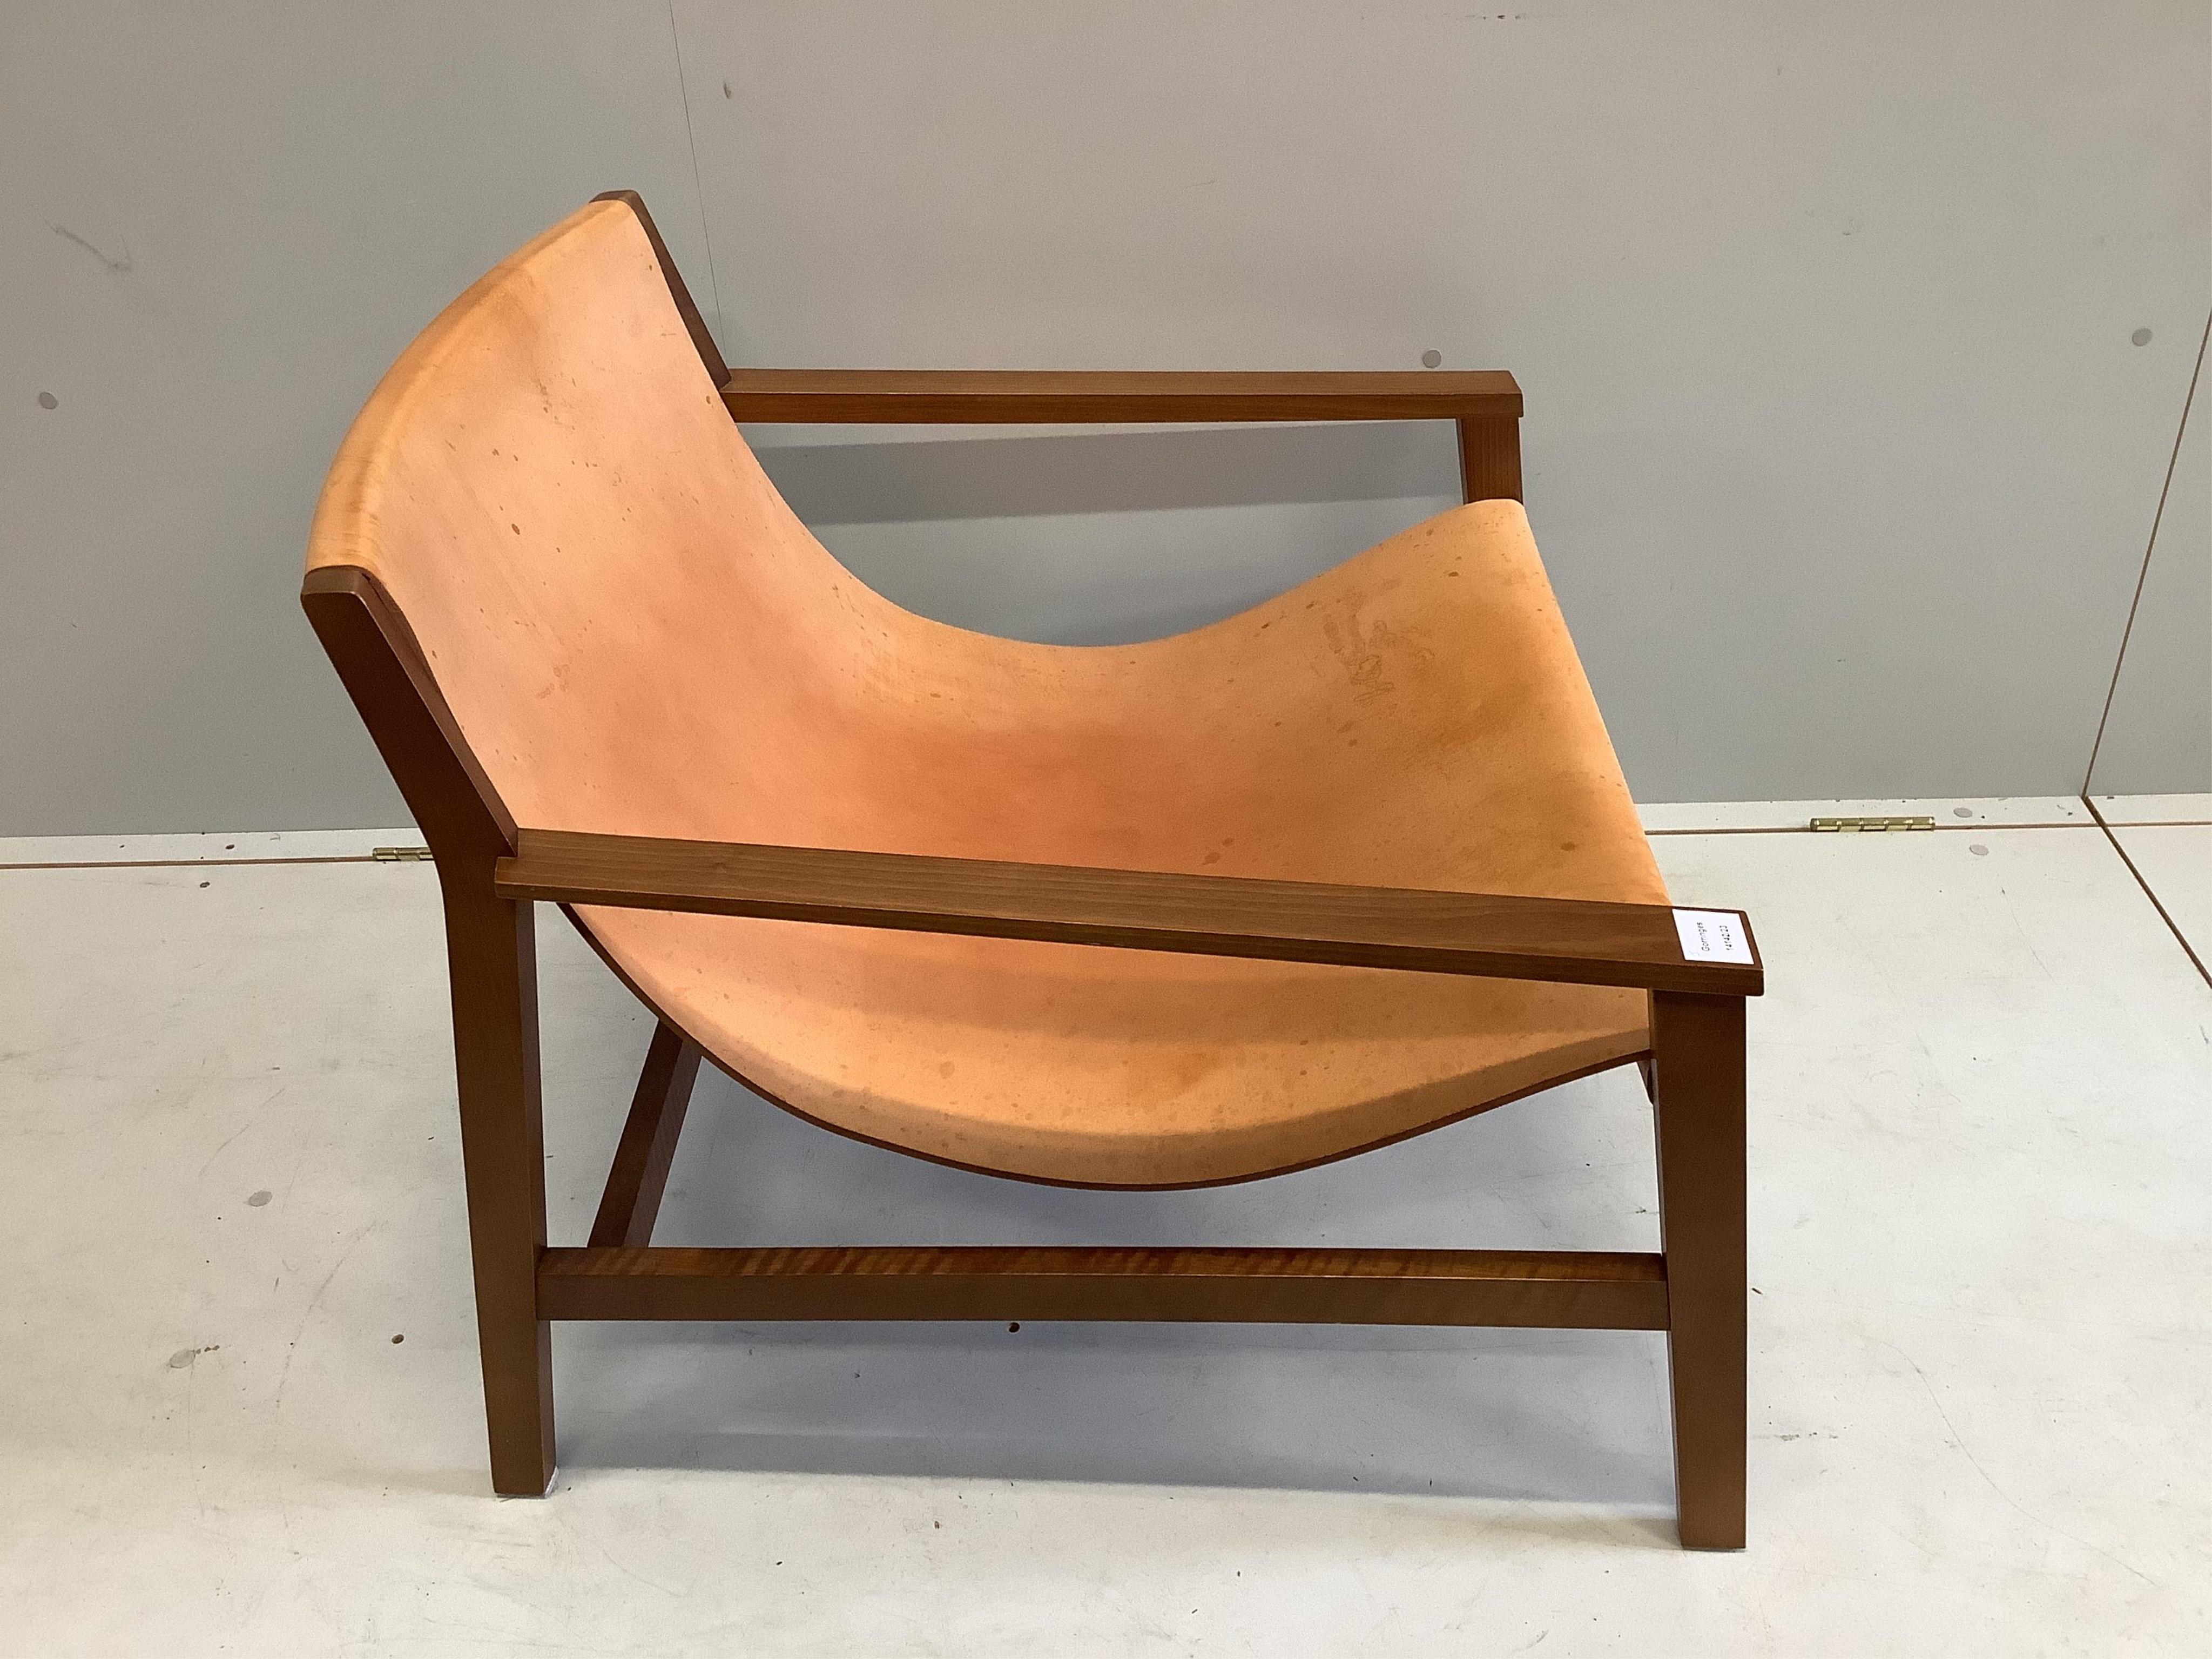 A Sdraio Chair by Living Divani, width 77cm, depth 74cm, height 66cm